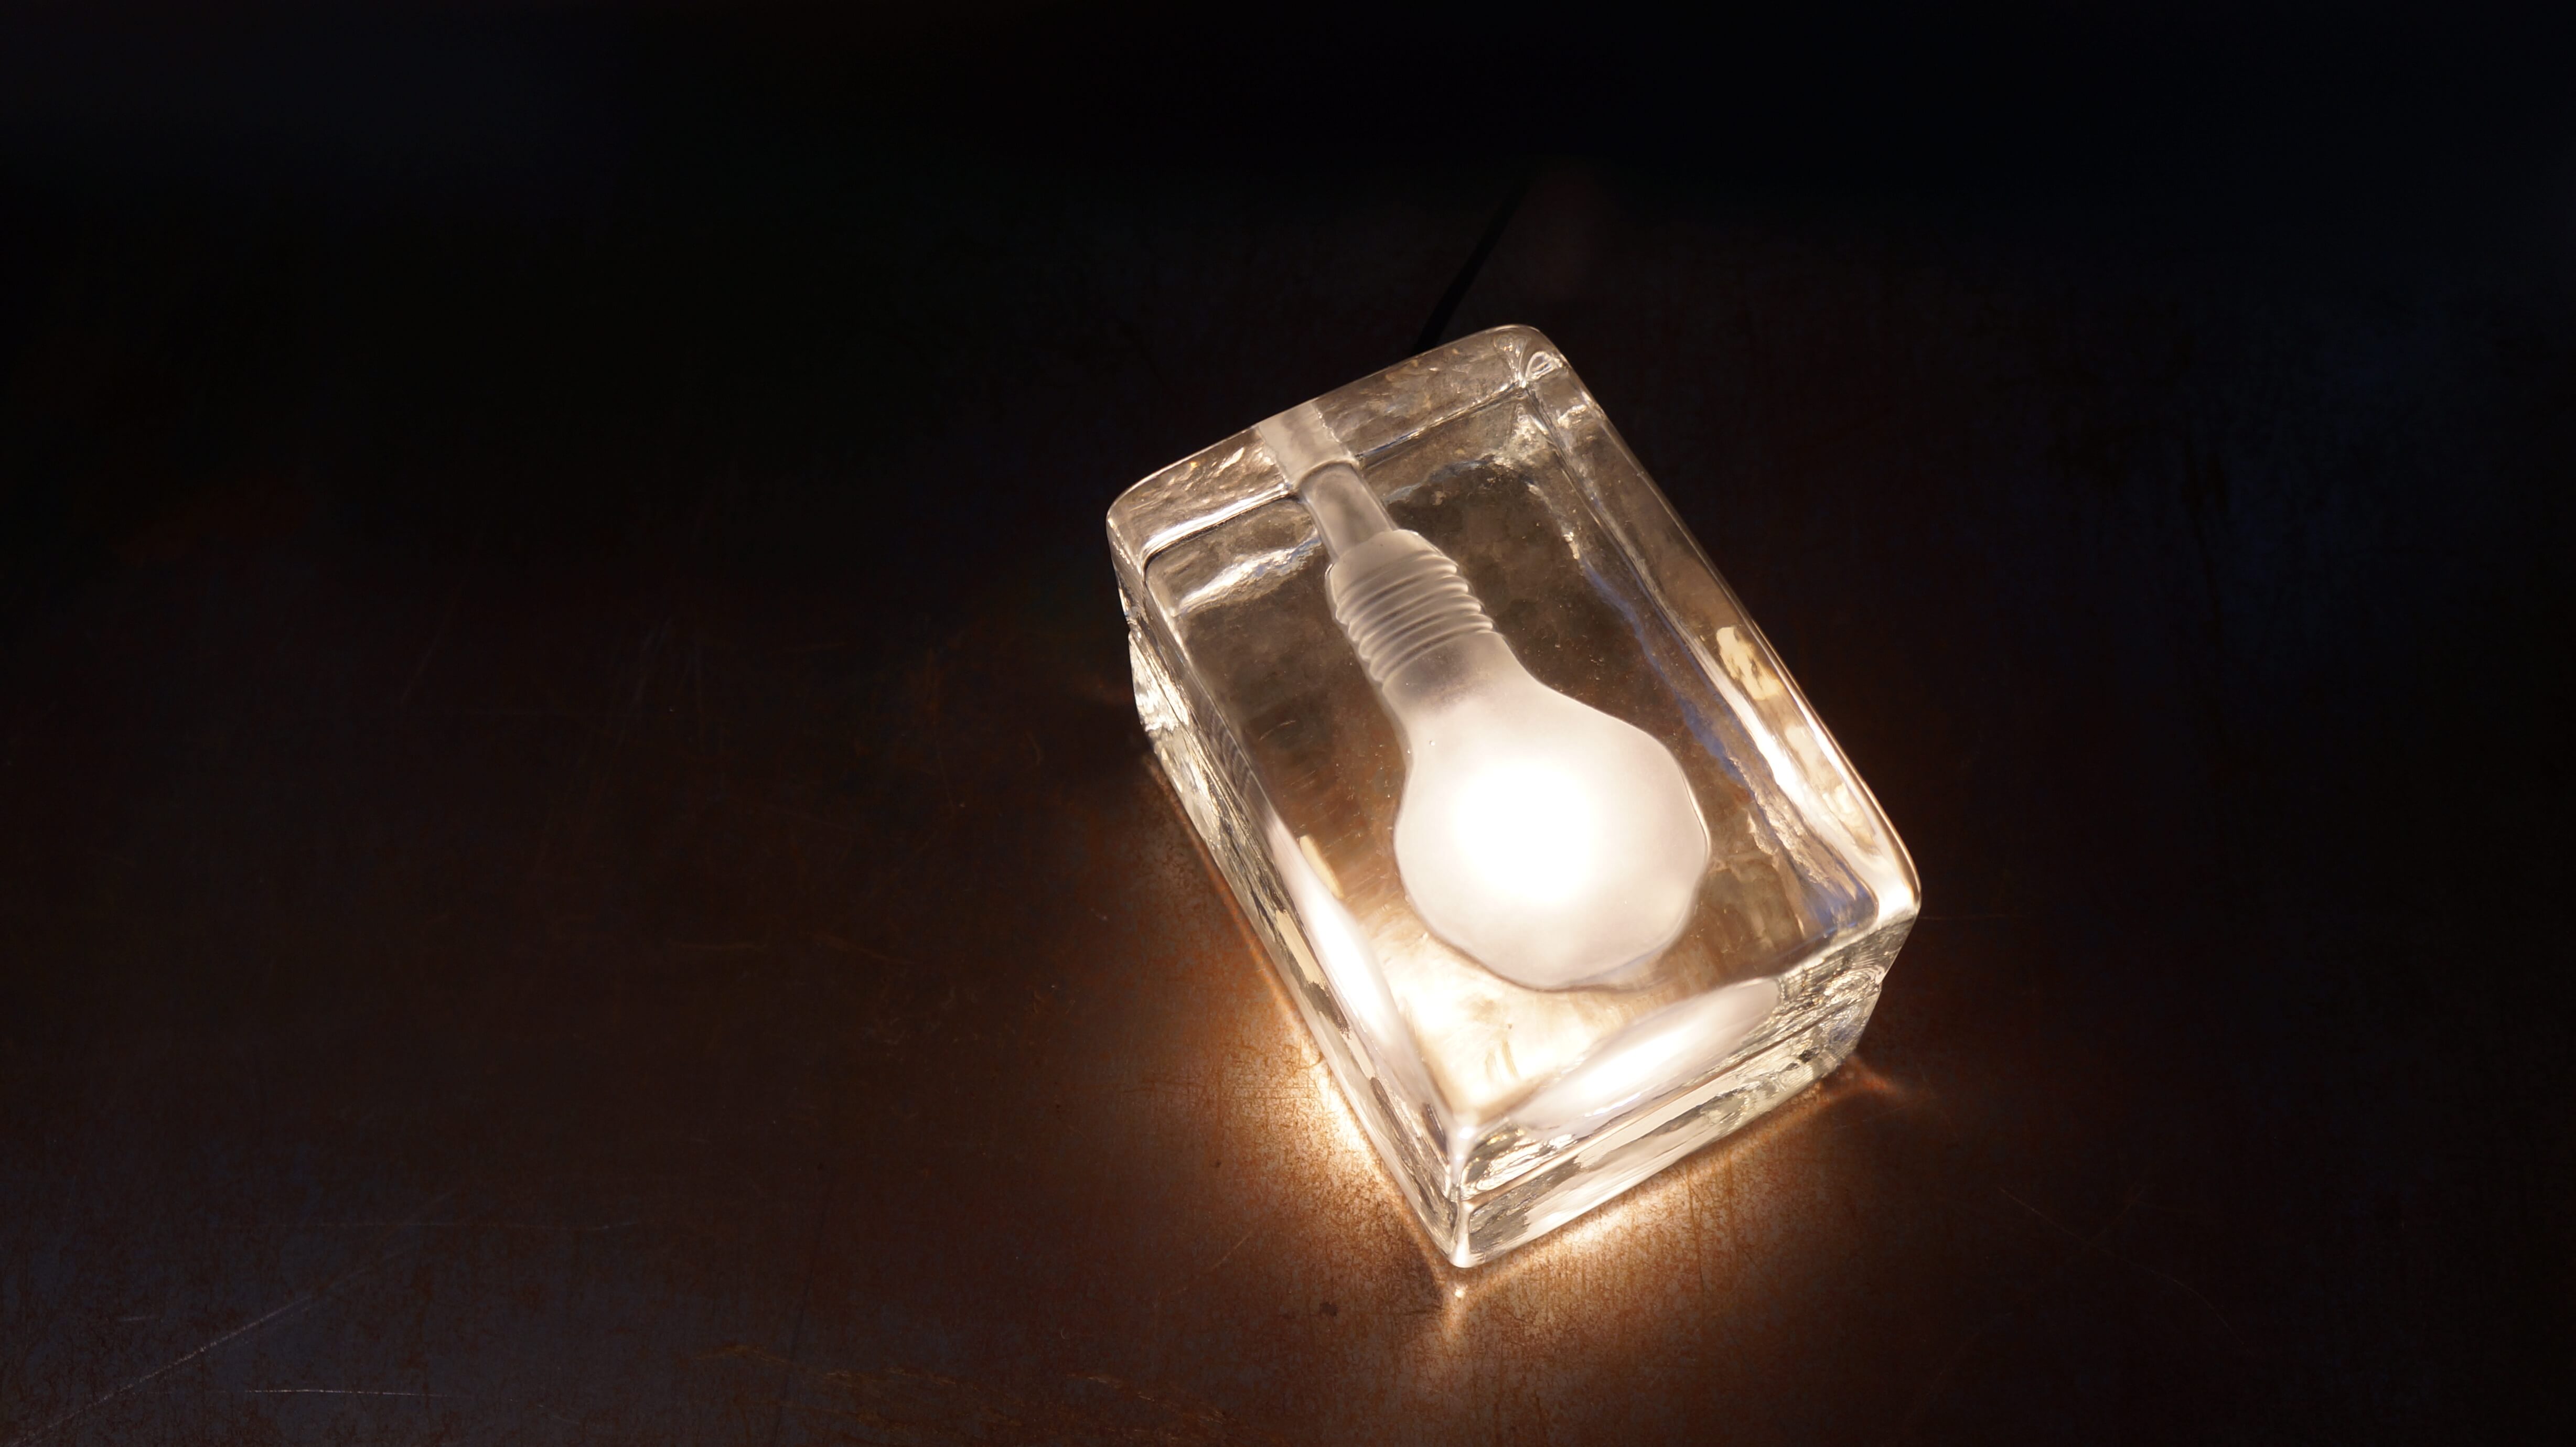 DESIGN HOUSE BLOCK LAMP MINI designed by Harri Koskinen/ デザインハウス ブロックランプ ミニ ハッリ・コスキネン デザイン 【商品説明】 氷の中に閉じこめられた電球が氷を溶かしてしまいそうに見えるランプ。 フィンランドのデザイナー、ハッリ・コスキネンが学生時代に発表したブロックランプは、 デザインハウス・ストックホルム社の目に止まり、彼の才能に光を与えました。 北欧・ヨーロッパ諸国をはじめ、アメリカでもベストセラーとなり、 MoMAのデザイン・コレクションに収められています。 工業用のガラス製ブロックからインスピレーションを得たユニークな形から、 ソフトな明かりが広がります。 お部屋の演出に是非いかがでしょうか。 DESIGN HOUSE Stockholm/デザイン ハウス ストックホルム 1992年、スウェーデン・ストックホルムに設立されたデザインハウスストックホルム社は、 北欧出身の有名デザイナーや建築家達からのアイディアを選りすぐり、コレクションを発表しつづけています。 ベストセラー商品も多数生み出し、まさに北欧デザインブームを巻き起こしたブランドのひとつといっても過言ではありません。 洗練された機能と永遠の美しさを併せ持ったクオリティの高い商品を生産し続けています。 Harri・Koskinen/ハッリ・コネスキン 1970年にフィンランドで生まれ、ラティ・デザイン学校を経て、 ヘルシンキ美術デザイン大学を卒業し。 学生時代からフリーデザイナーとしてiittala（イッタラ）等と仕事をし、 その才能を発揮しており国際的に注目を集めます。 最も有名な作品のひとつとして、1996 年にデザインされたブロック・ランプ。 1998年ミラノ・サローネで発表され、デザインハウス・ストックホルムが製品化したこのランプは 、MoMA の永久コレクションに加えられ、また数々の国際的アワードを受賞しました。 他にも、イッセイミヤケのためにデザインした「VAKIO」腕時計シリーズも有名です。 現在まで東京、ベルリン、ヘルシンキやモスクワなど世界中の様々な国で個展を開いており 、クライアントもアルテック、ワールドワイド、ジェネレック、イッタラ、ウッドノーツ、 マルニ、イッセイミヤケ、無印良品、パナソニック、セイコー、カッシーナ、モンティナ、 ヴェニーニ、オールーチェ、アスプルンド、ヴェニーニ、デザインハウス・ストックホルム、 スワロフスキーなどグローバル規模の一流企業が名を連ねています。 ～【東京都杉並区阿佐ヶ谷北アンティークショップ 古一/ZACK高円寺店】　古一/ふるいちでは出張無料買取も行っております。杉並区周辺はもちろん、世田谷区・目黒区・武蔵野市・新宿区等の東京近郊のお見積もりも！ビンテージ家具・インテリア雑貨・ランプ・USED品・ リサイクルなら古一/フルイチへ～